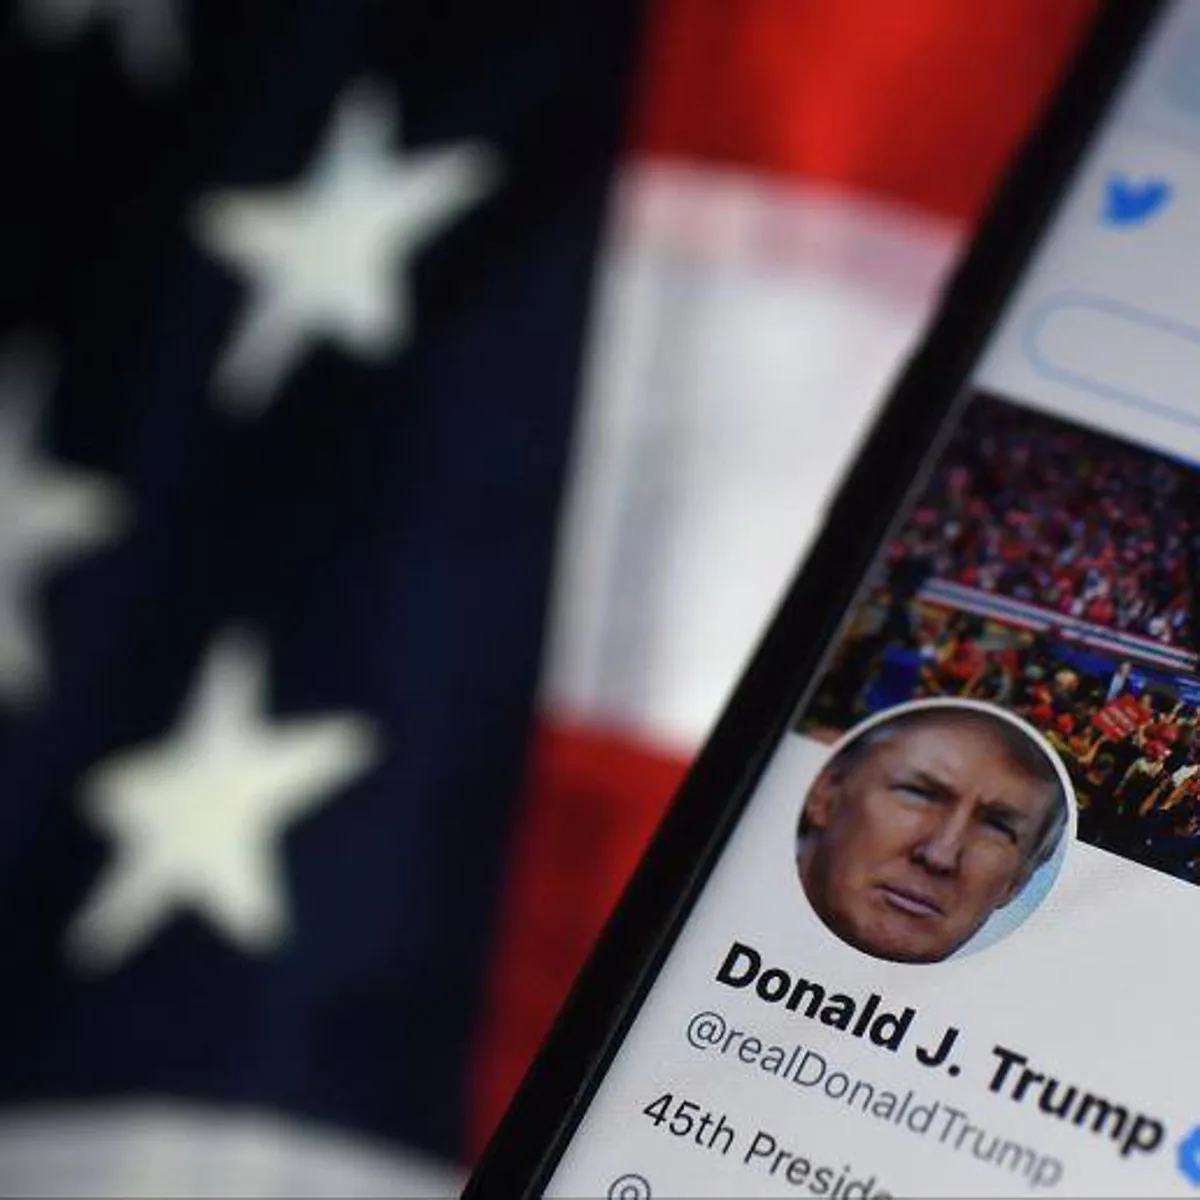 Trump descarta volver a Twitter tras la reactivación de su cuenta